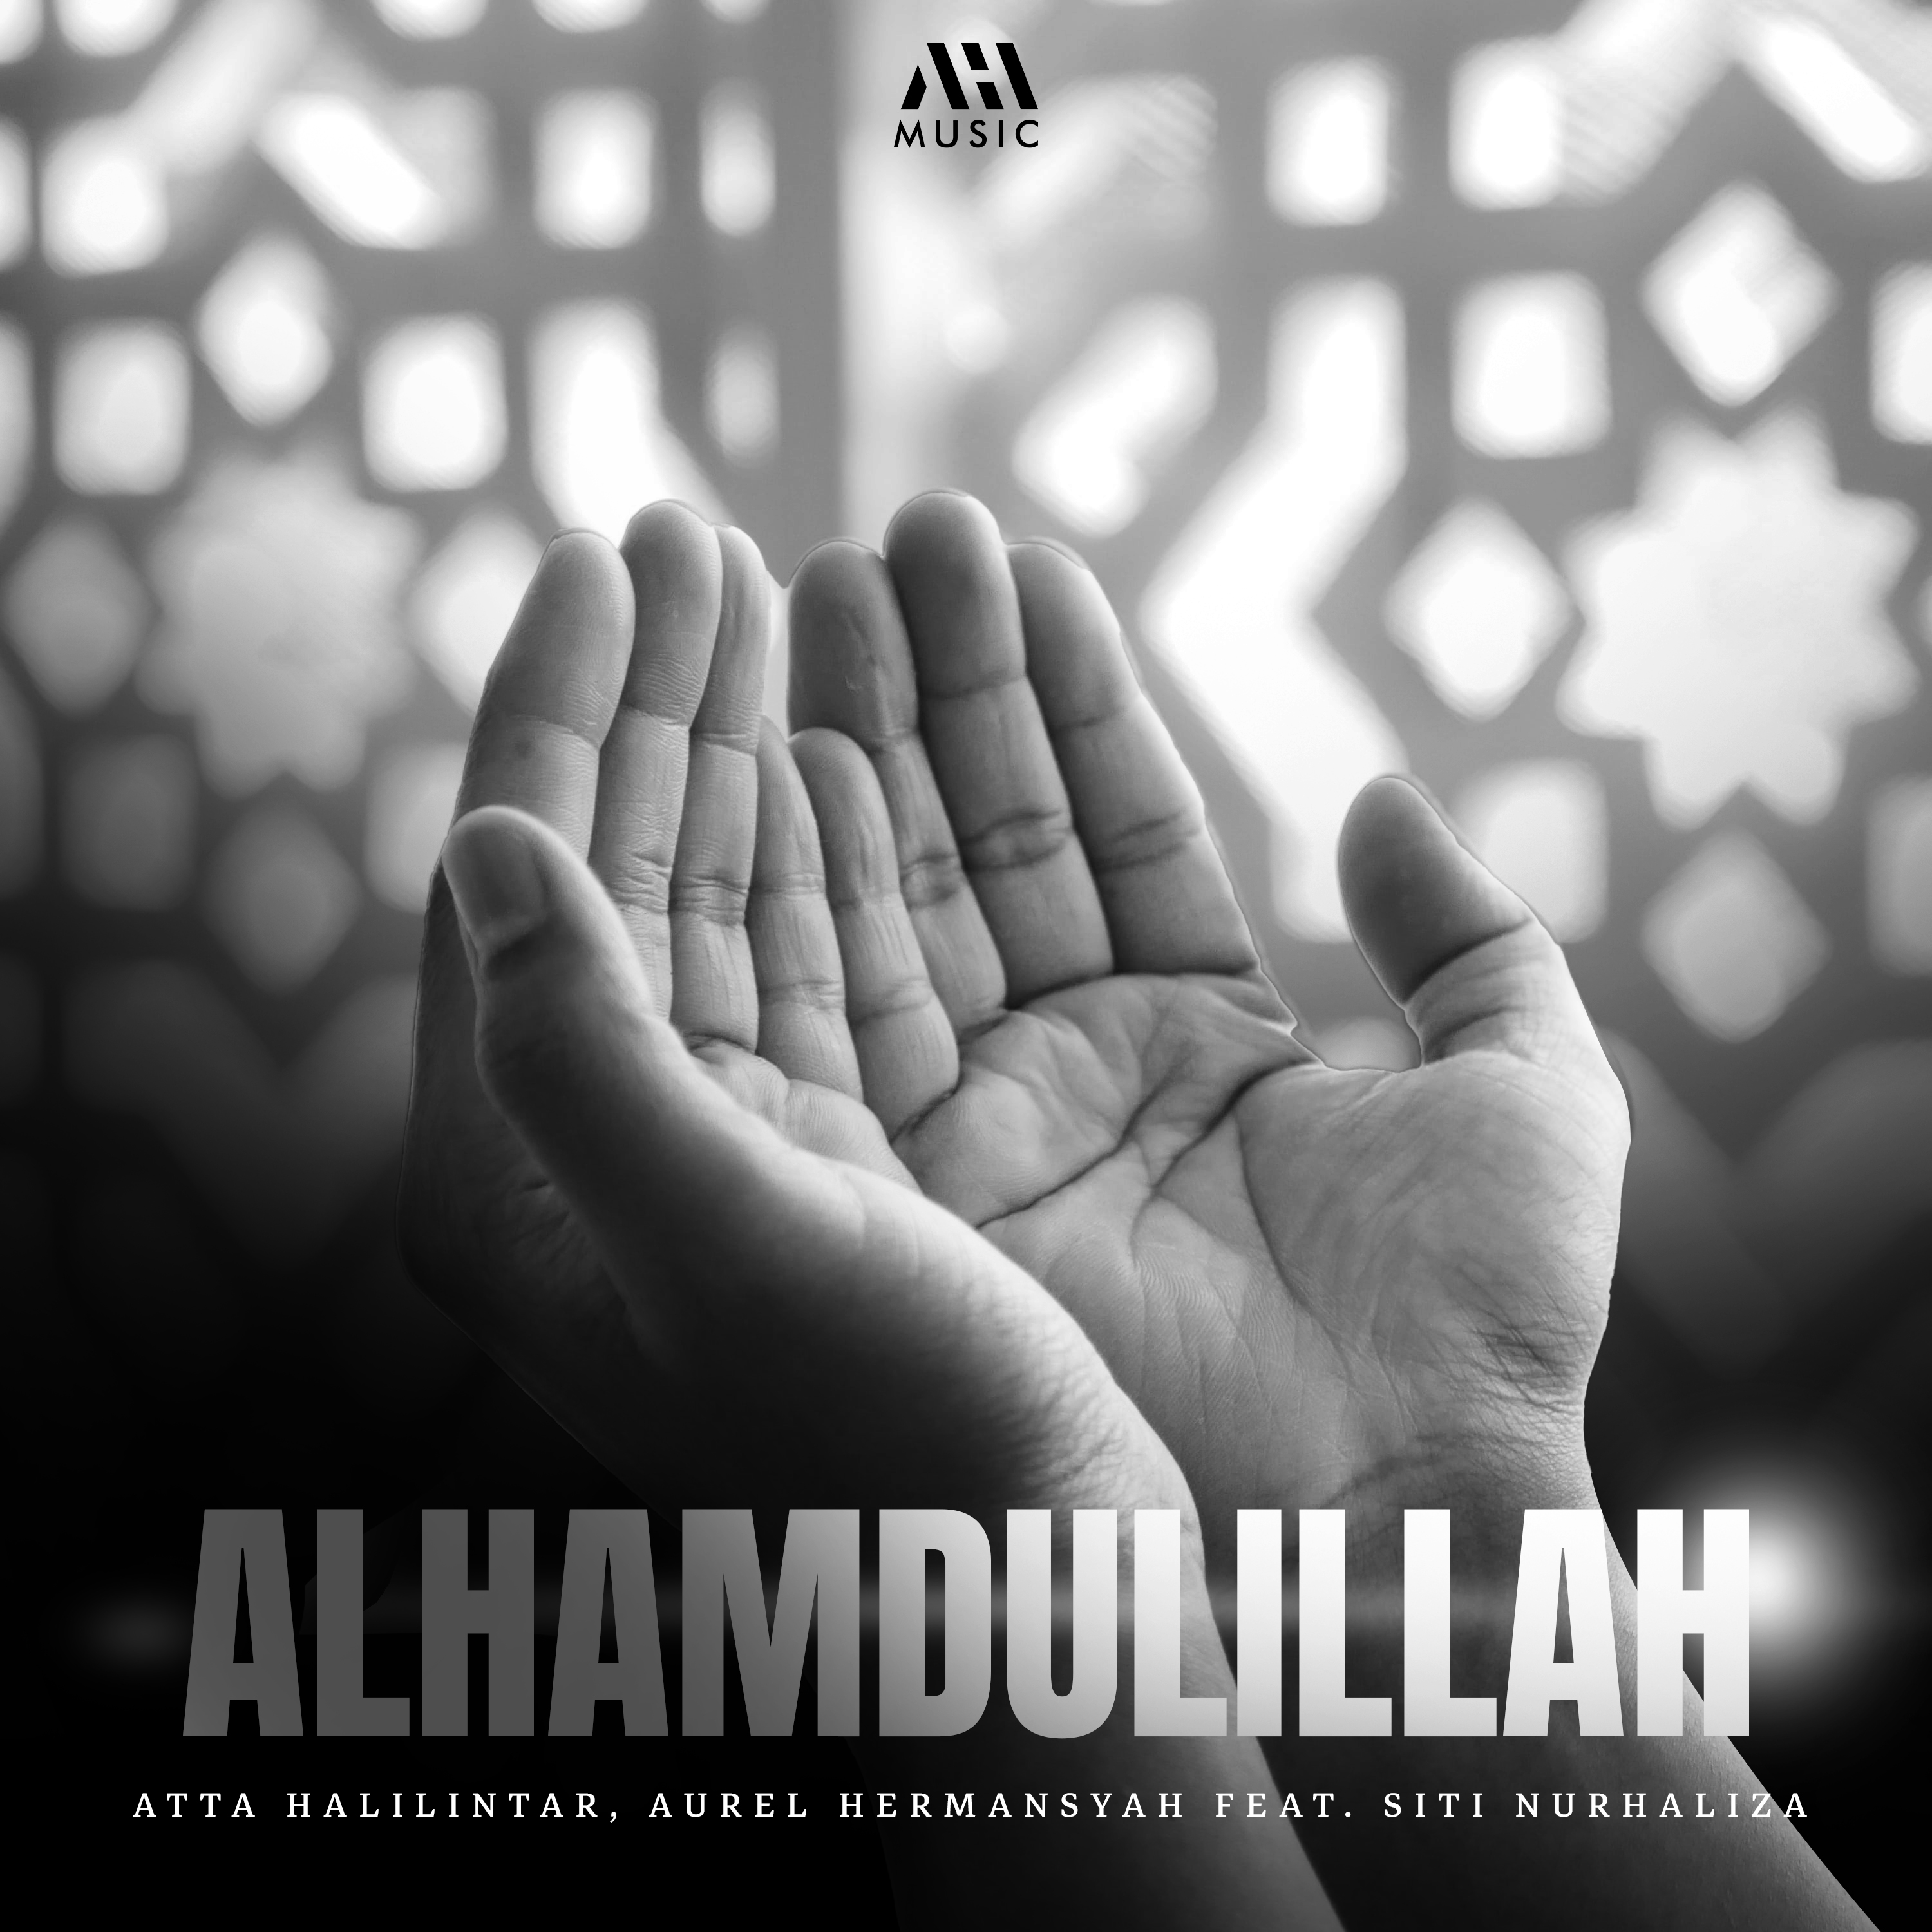 Artwork single ALHAMDULILLAH (Sumber gambar: AHHA Music)